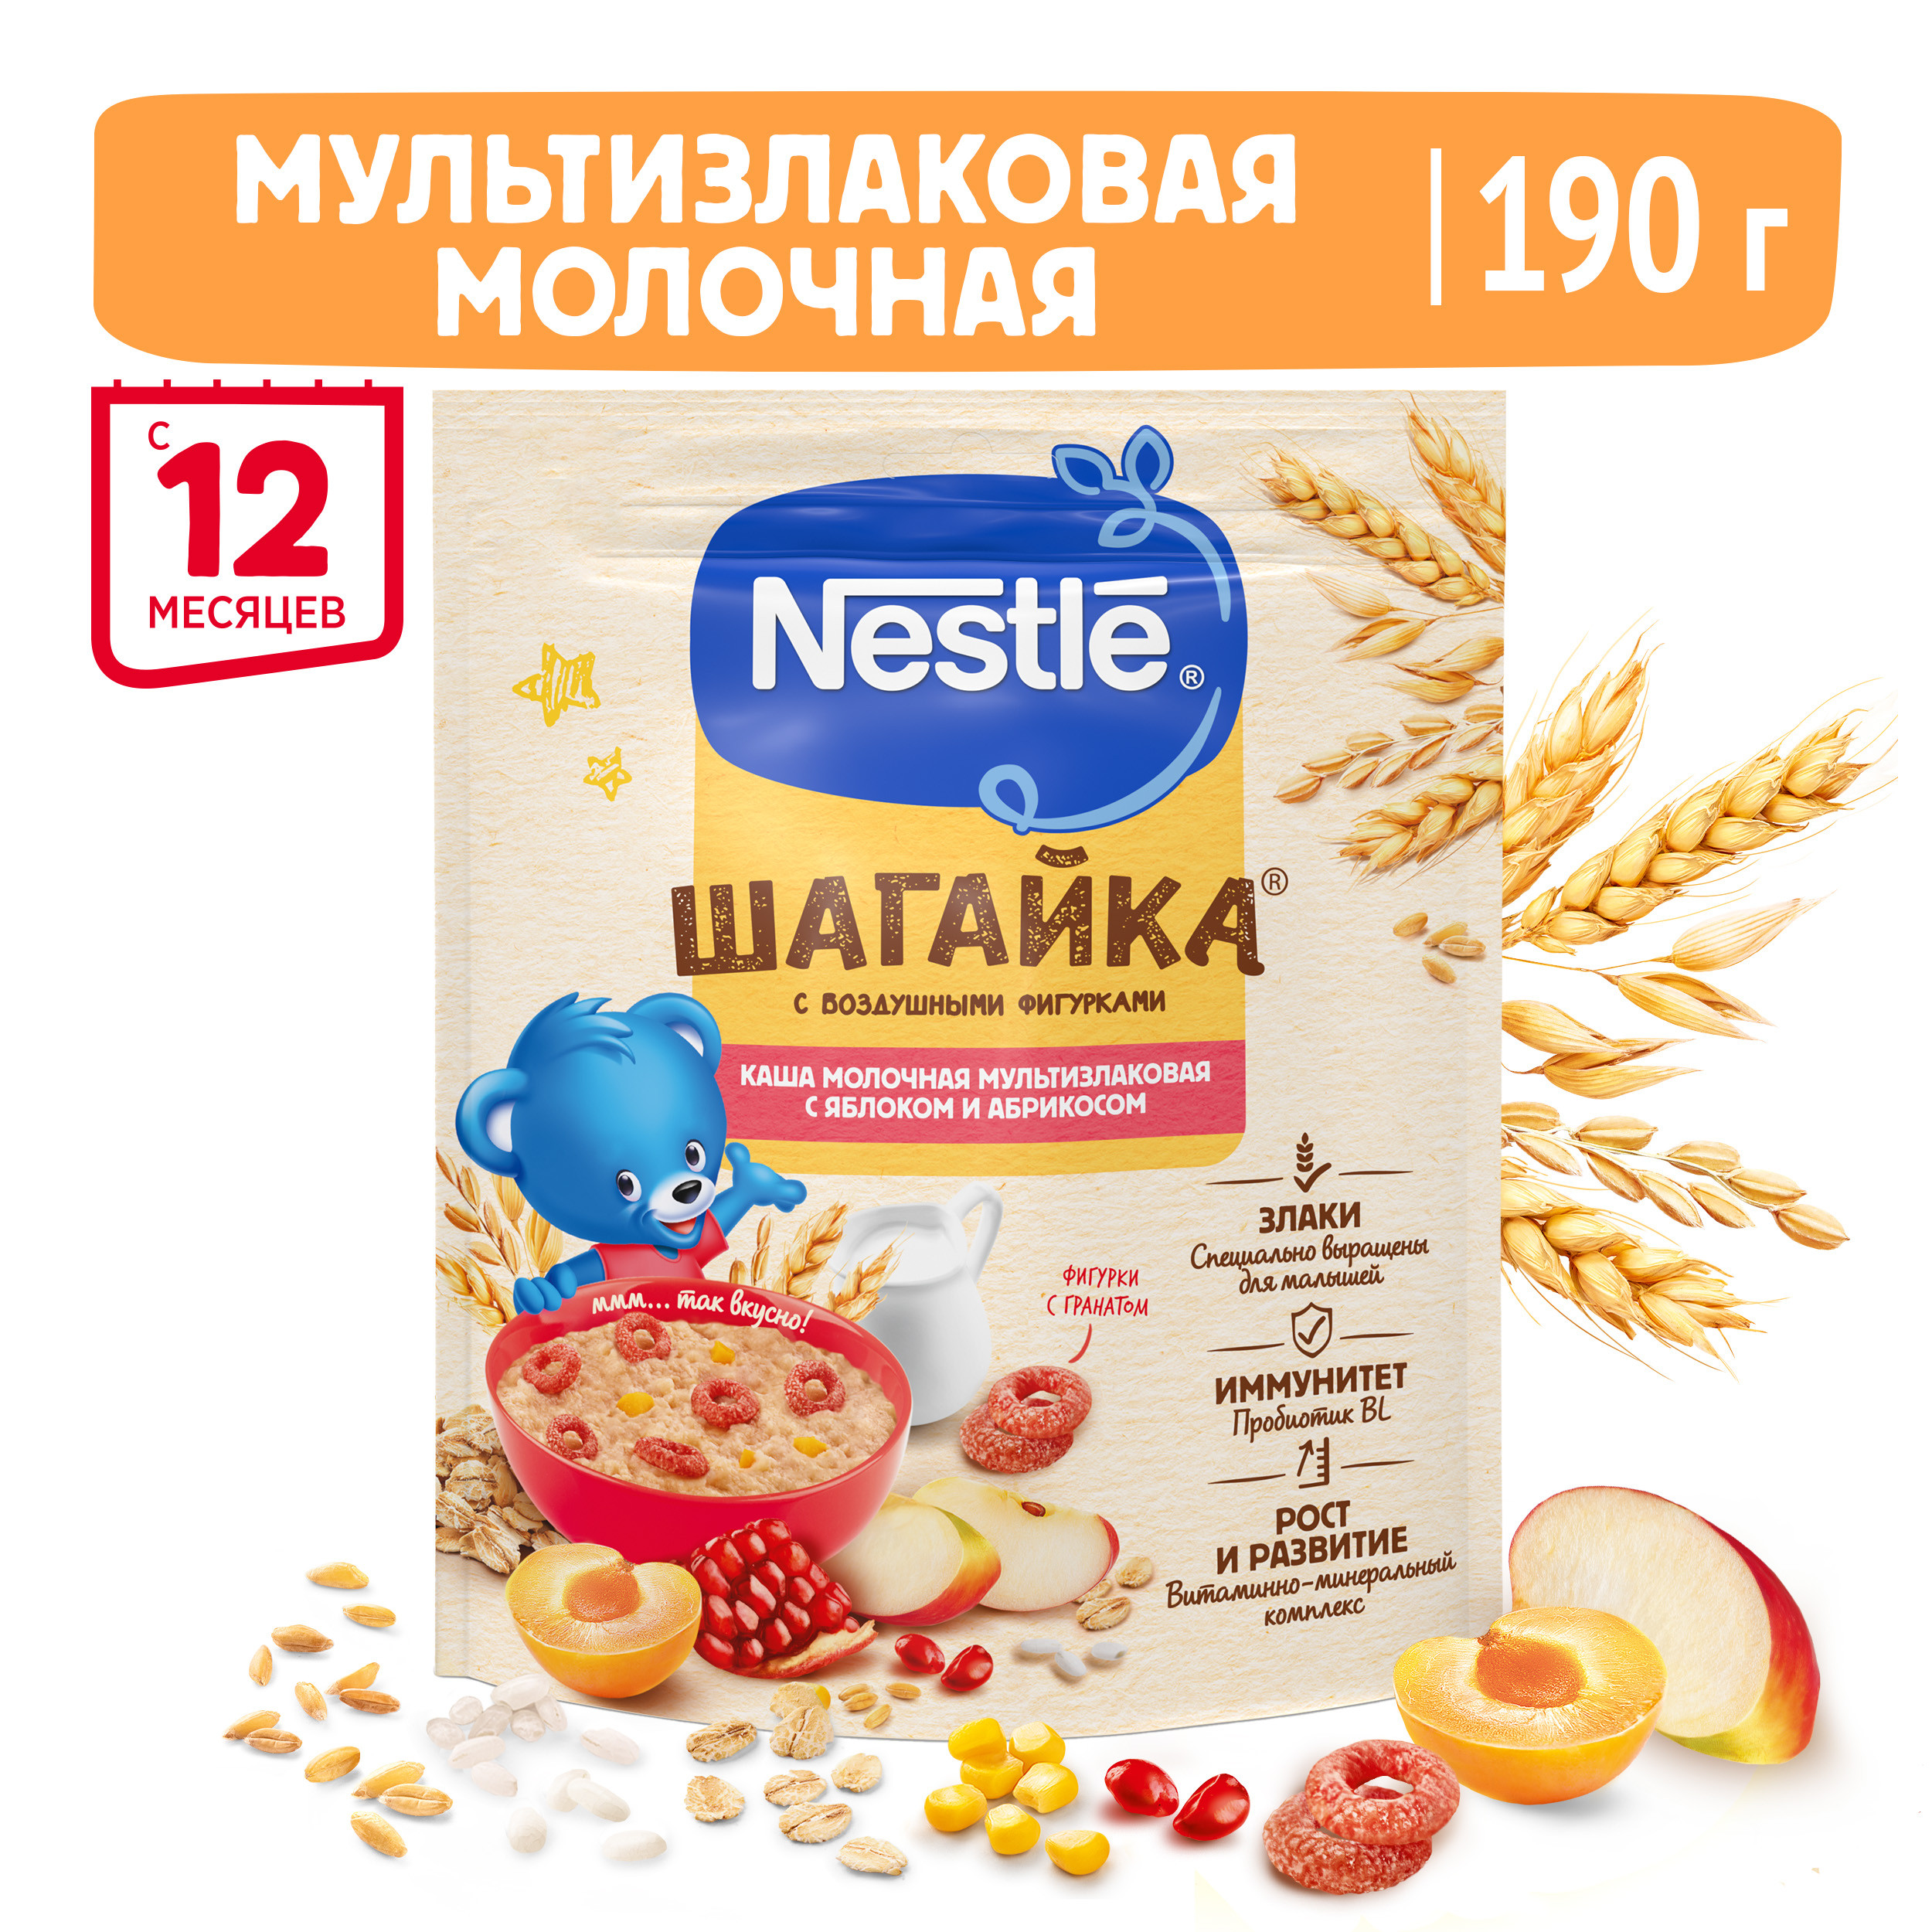 Каша молочная Nestle мультизлаковая с фигурками из пшеницы яблоко-манго-гранат 190г с 12месяцев - фото 1